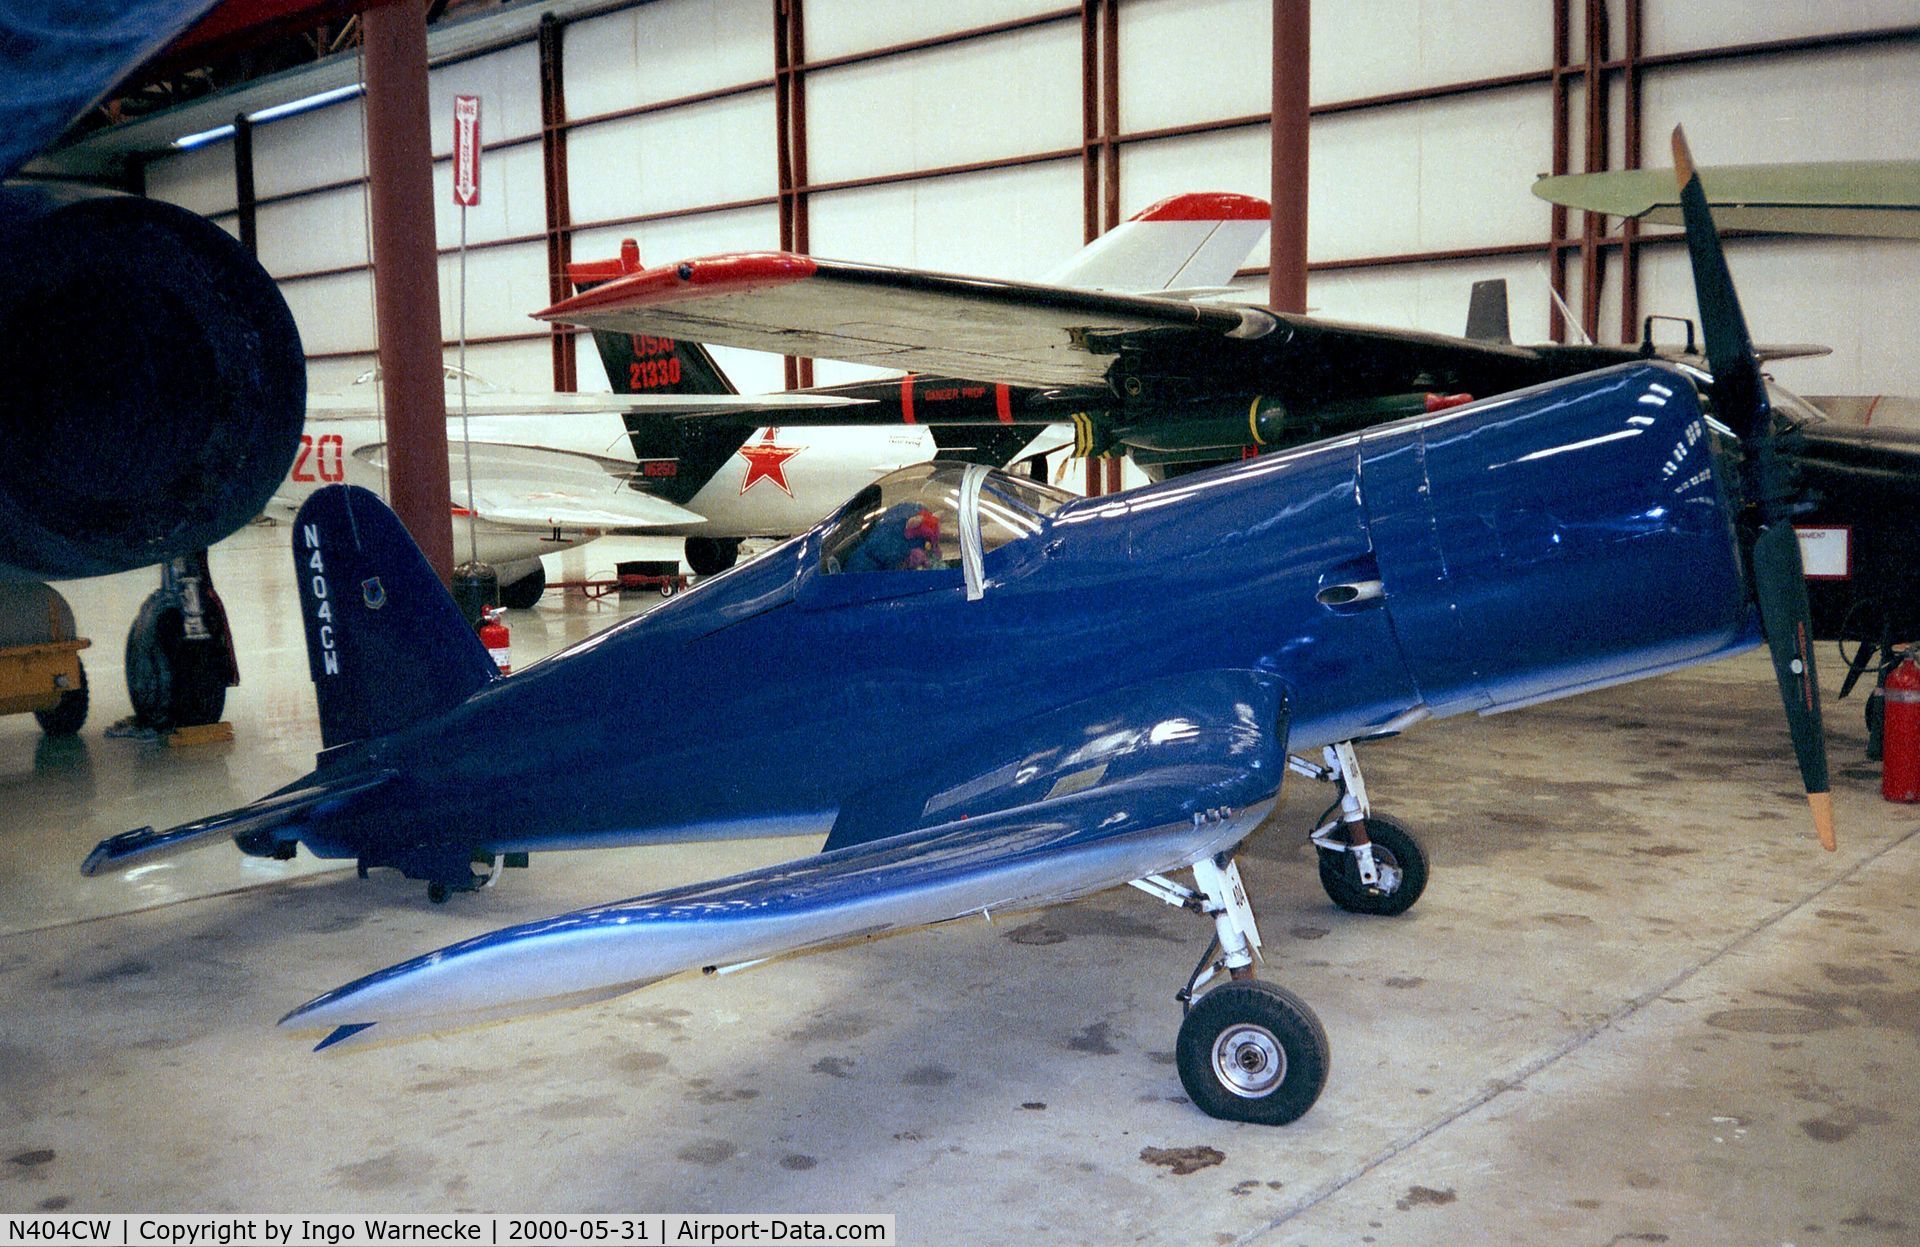 N404CW, 1979 Weirick F4U Corsair C/N 80, Cliff Weirick F4U Corsair 1/2-scale replica at the Valiant Air Command Warbird Museum, Titusville FL